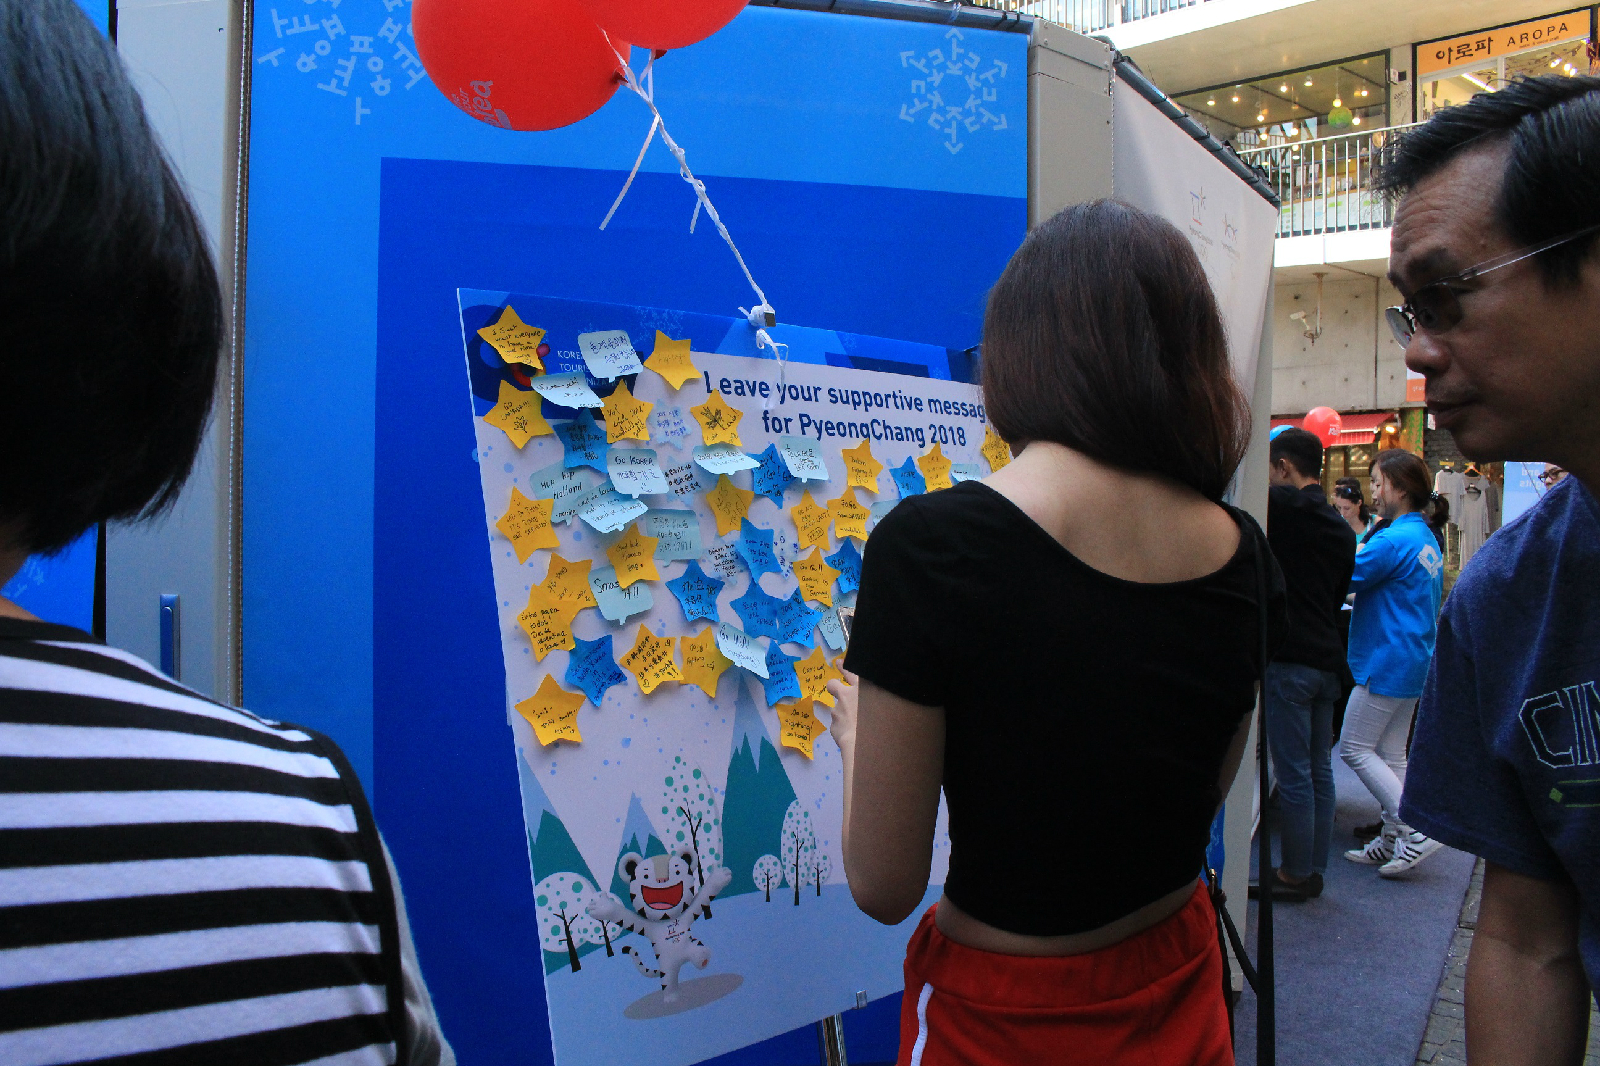 응원 메시지를 적는 참가자